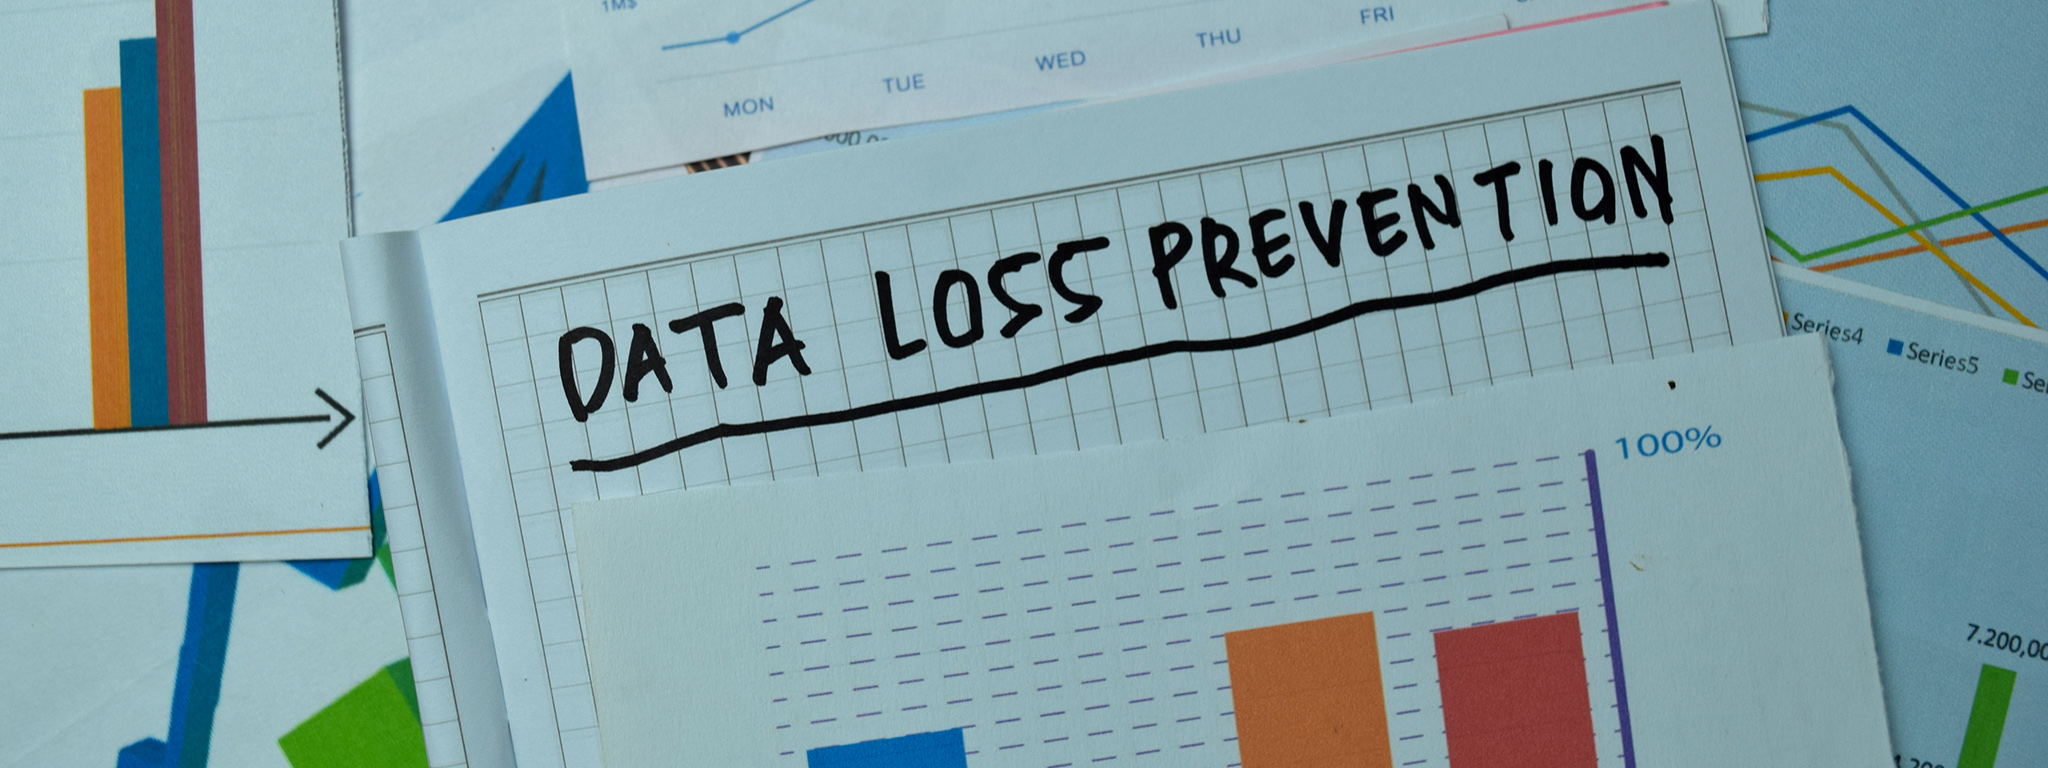 Слова &quot;Data Loss Prevention&quot; (Предотвращение потери данных), написанные на заметках с графиками и диаграммами на офисном столе.